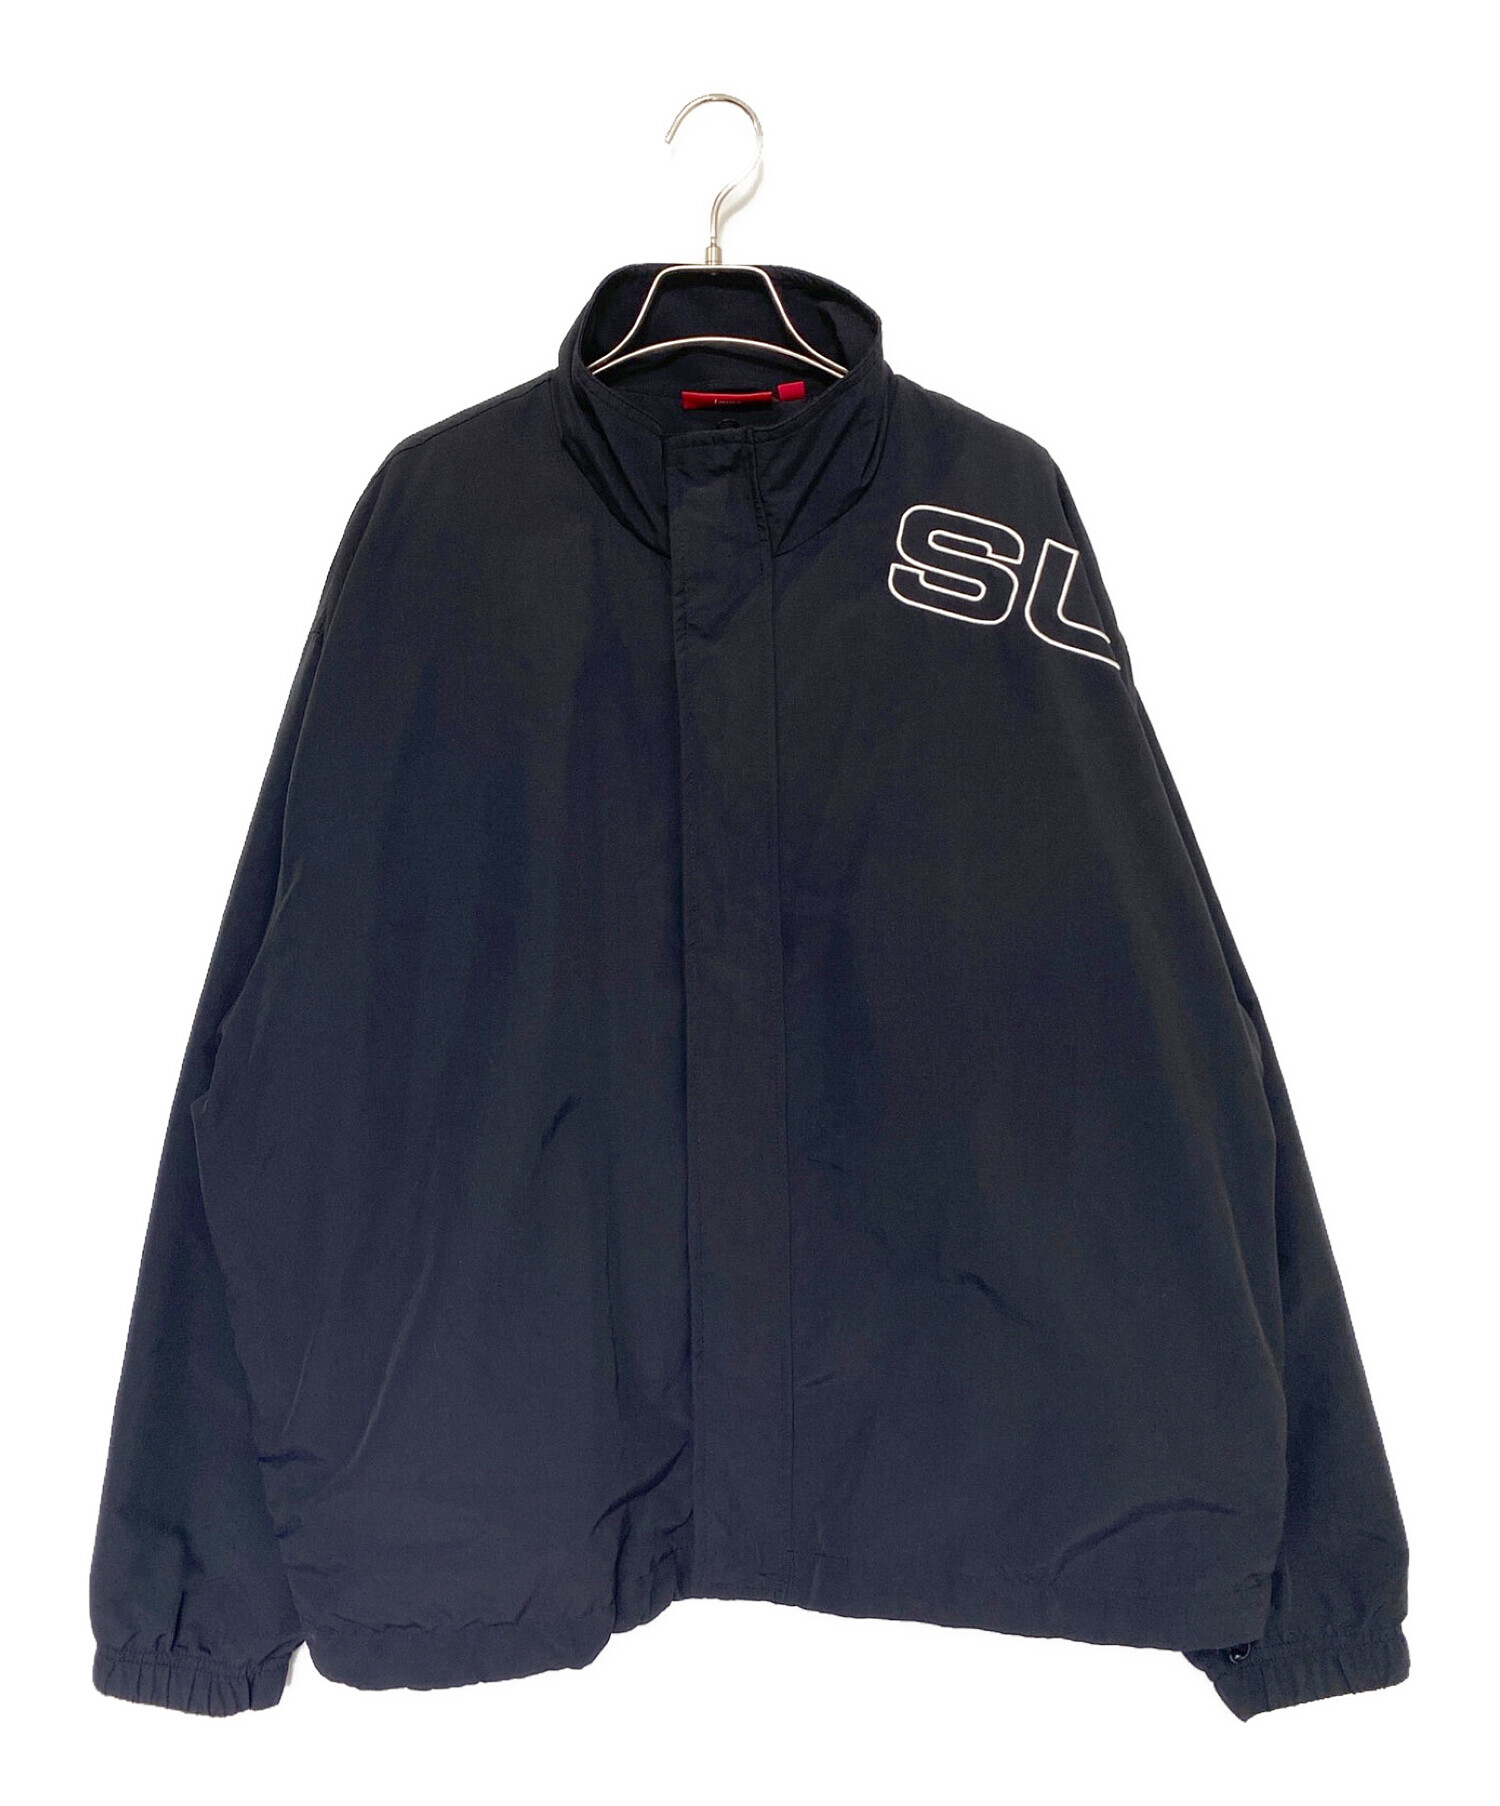 新品 Lサイズ supreme spellout track jacket 黒